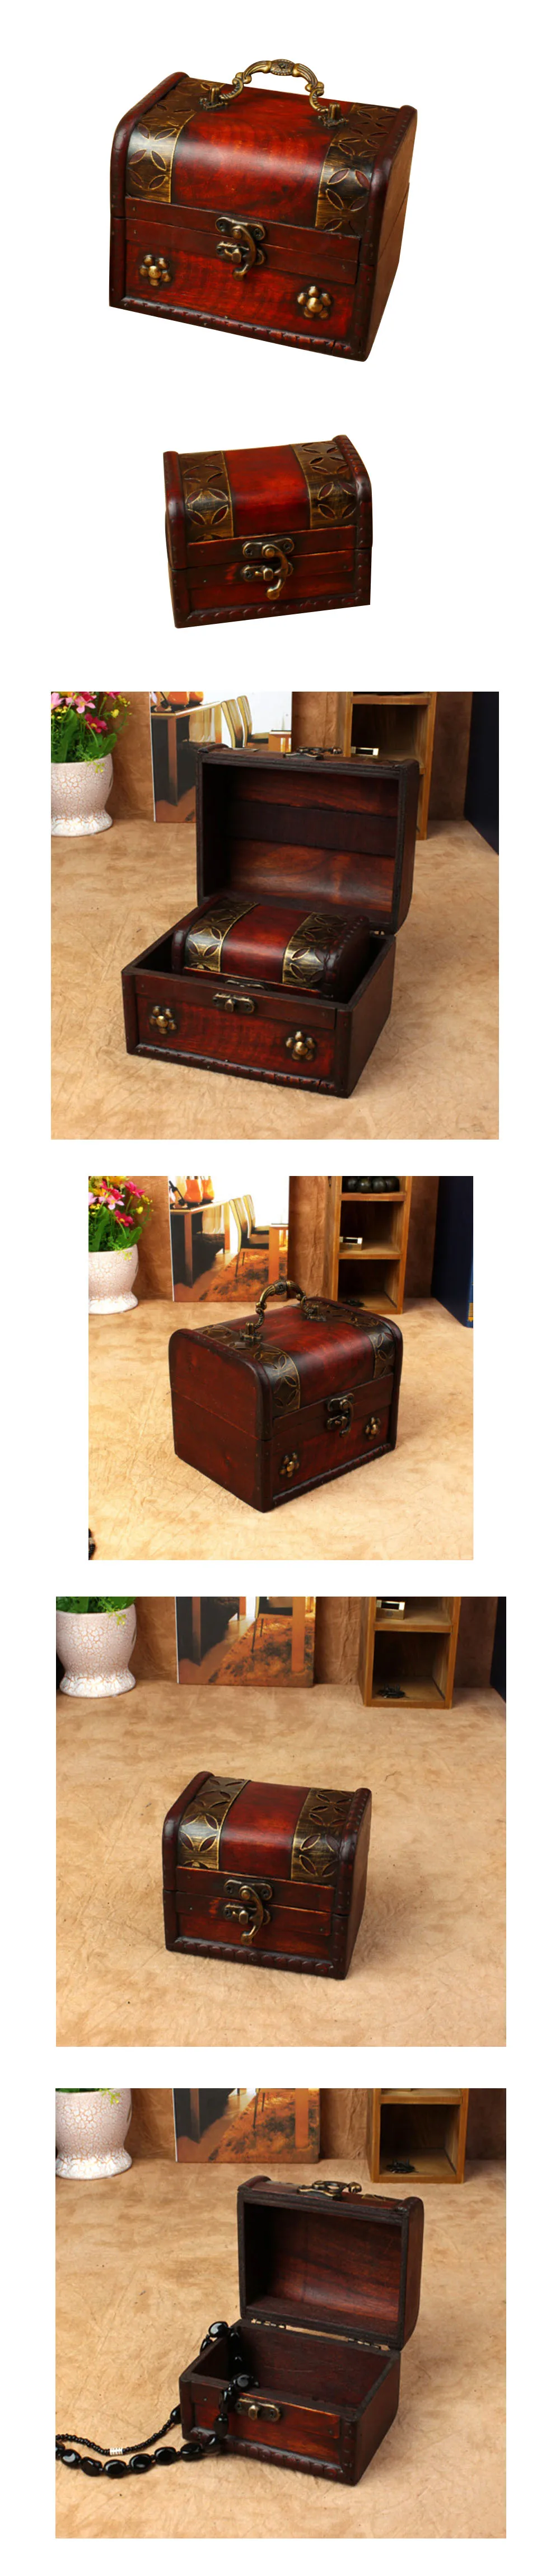 Европейский стиль Винтаж деревянных коробок для украшений для Secret собранные предметы кулон Цепочки и ожерелья серьги кольцо подарочная коробка Портативный 2 шт./компл